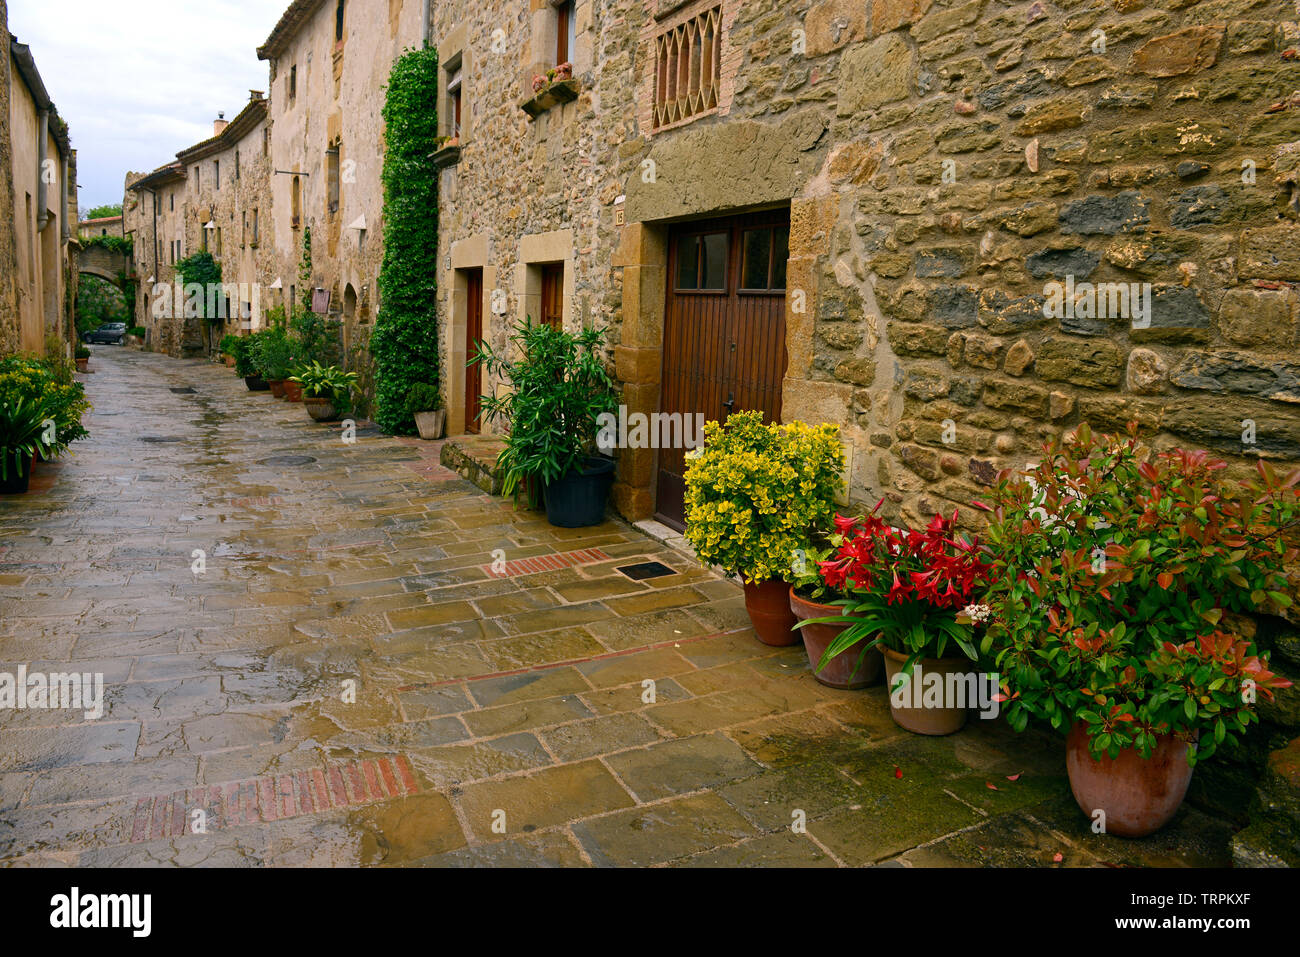 Village of Monells in the Costa Brava region Catalonia Spain Stock Photo